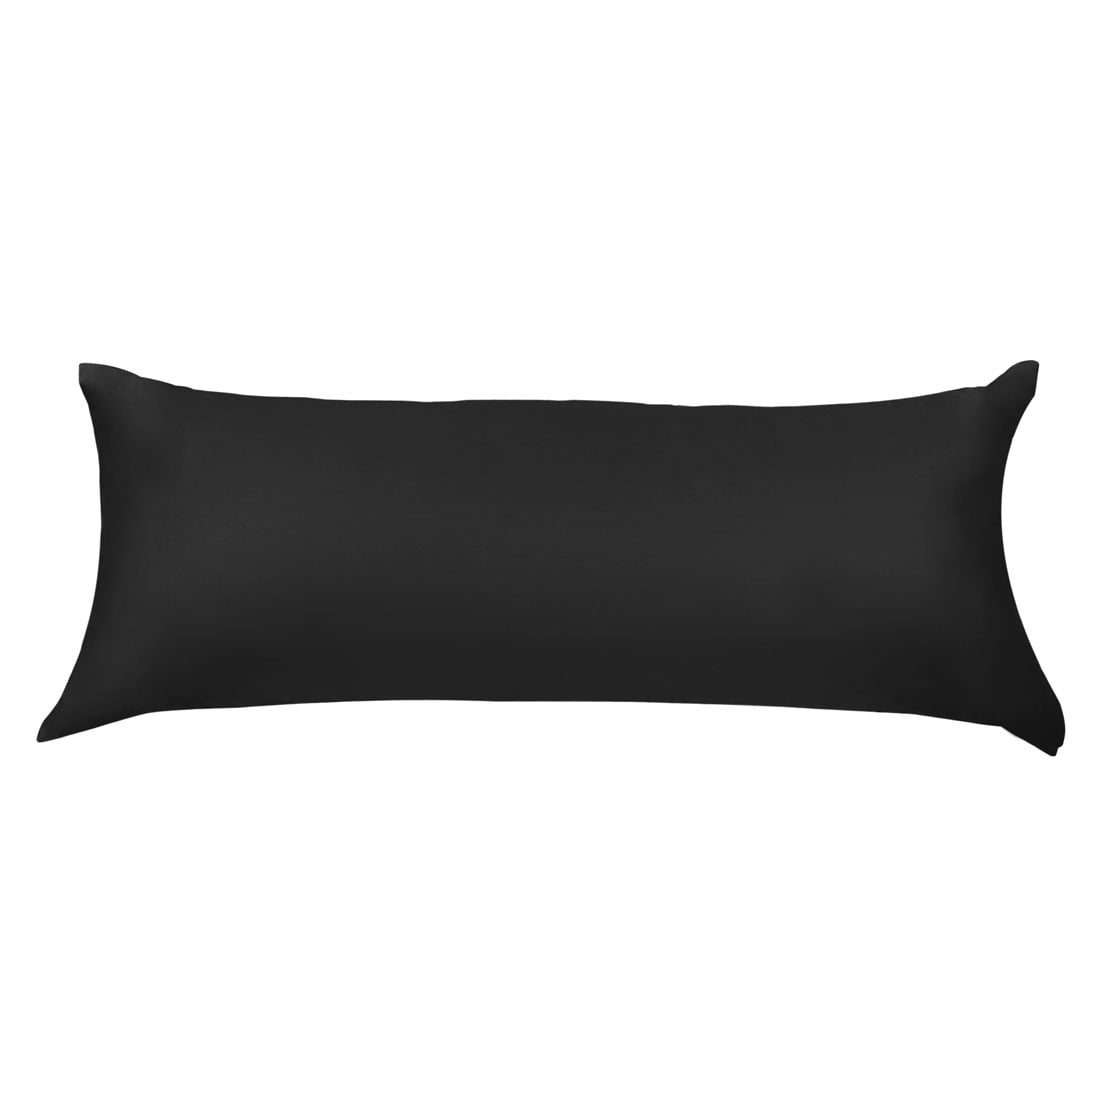 Unique Bargains Egyptian Cotton Long Body Pillow Cover Black 20